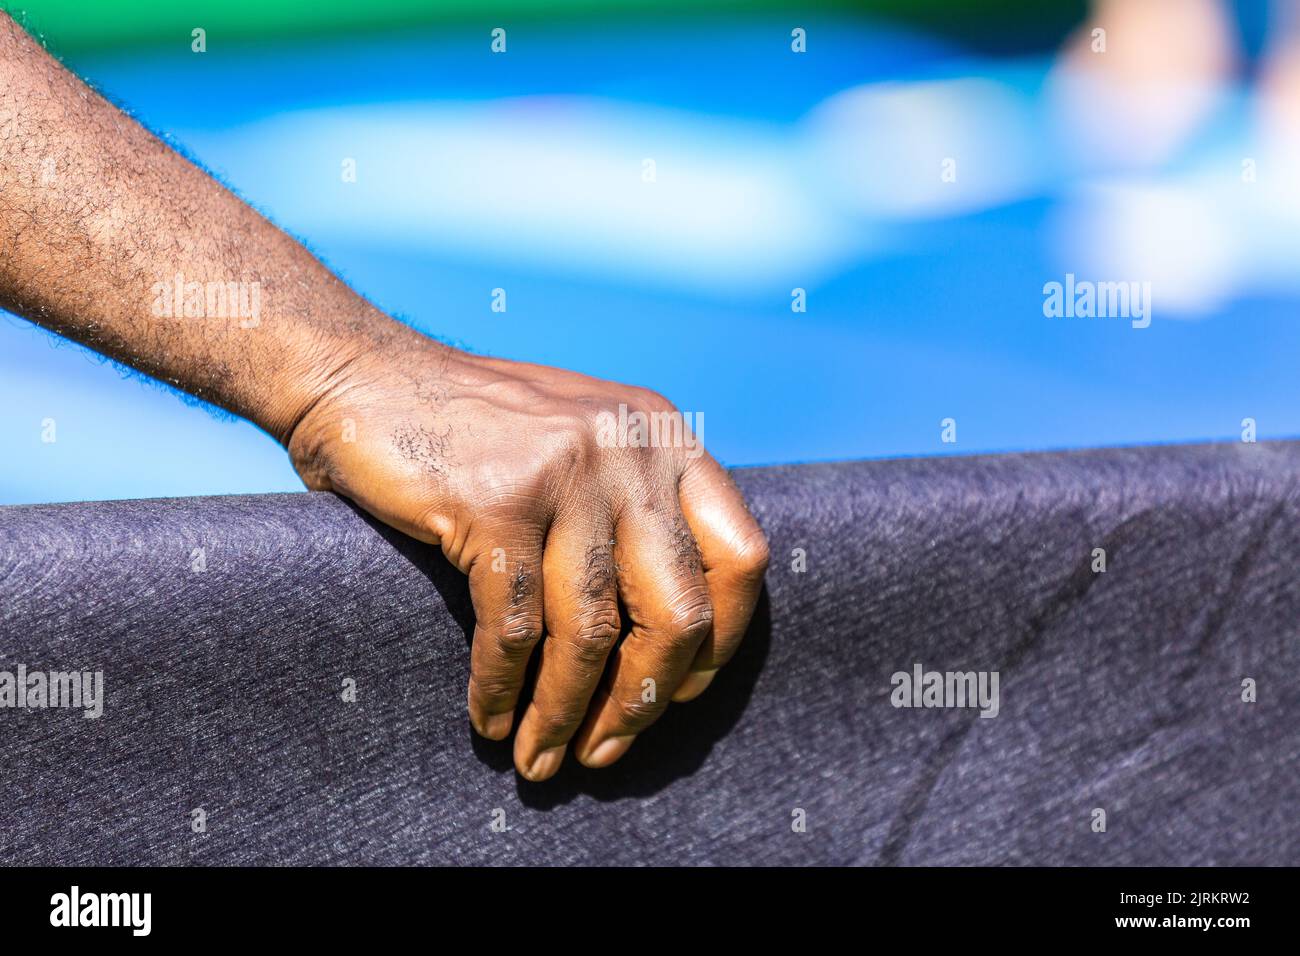 Mano de un hombre de color agarrando una barandilla cubierta de lienzo. Fondo azul. Foto de stock